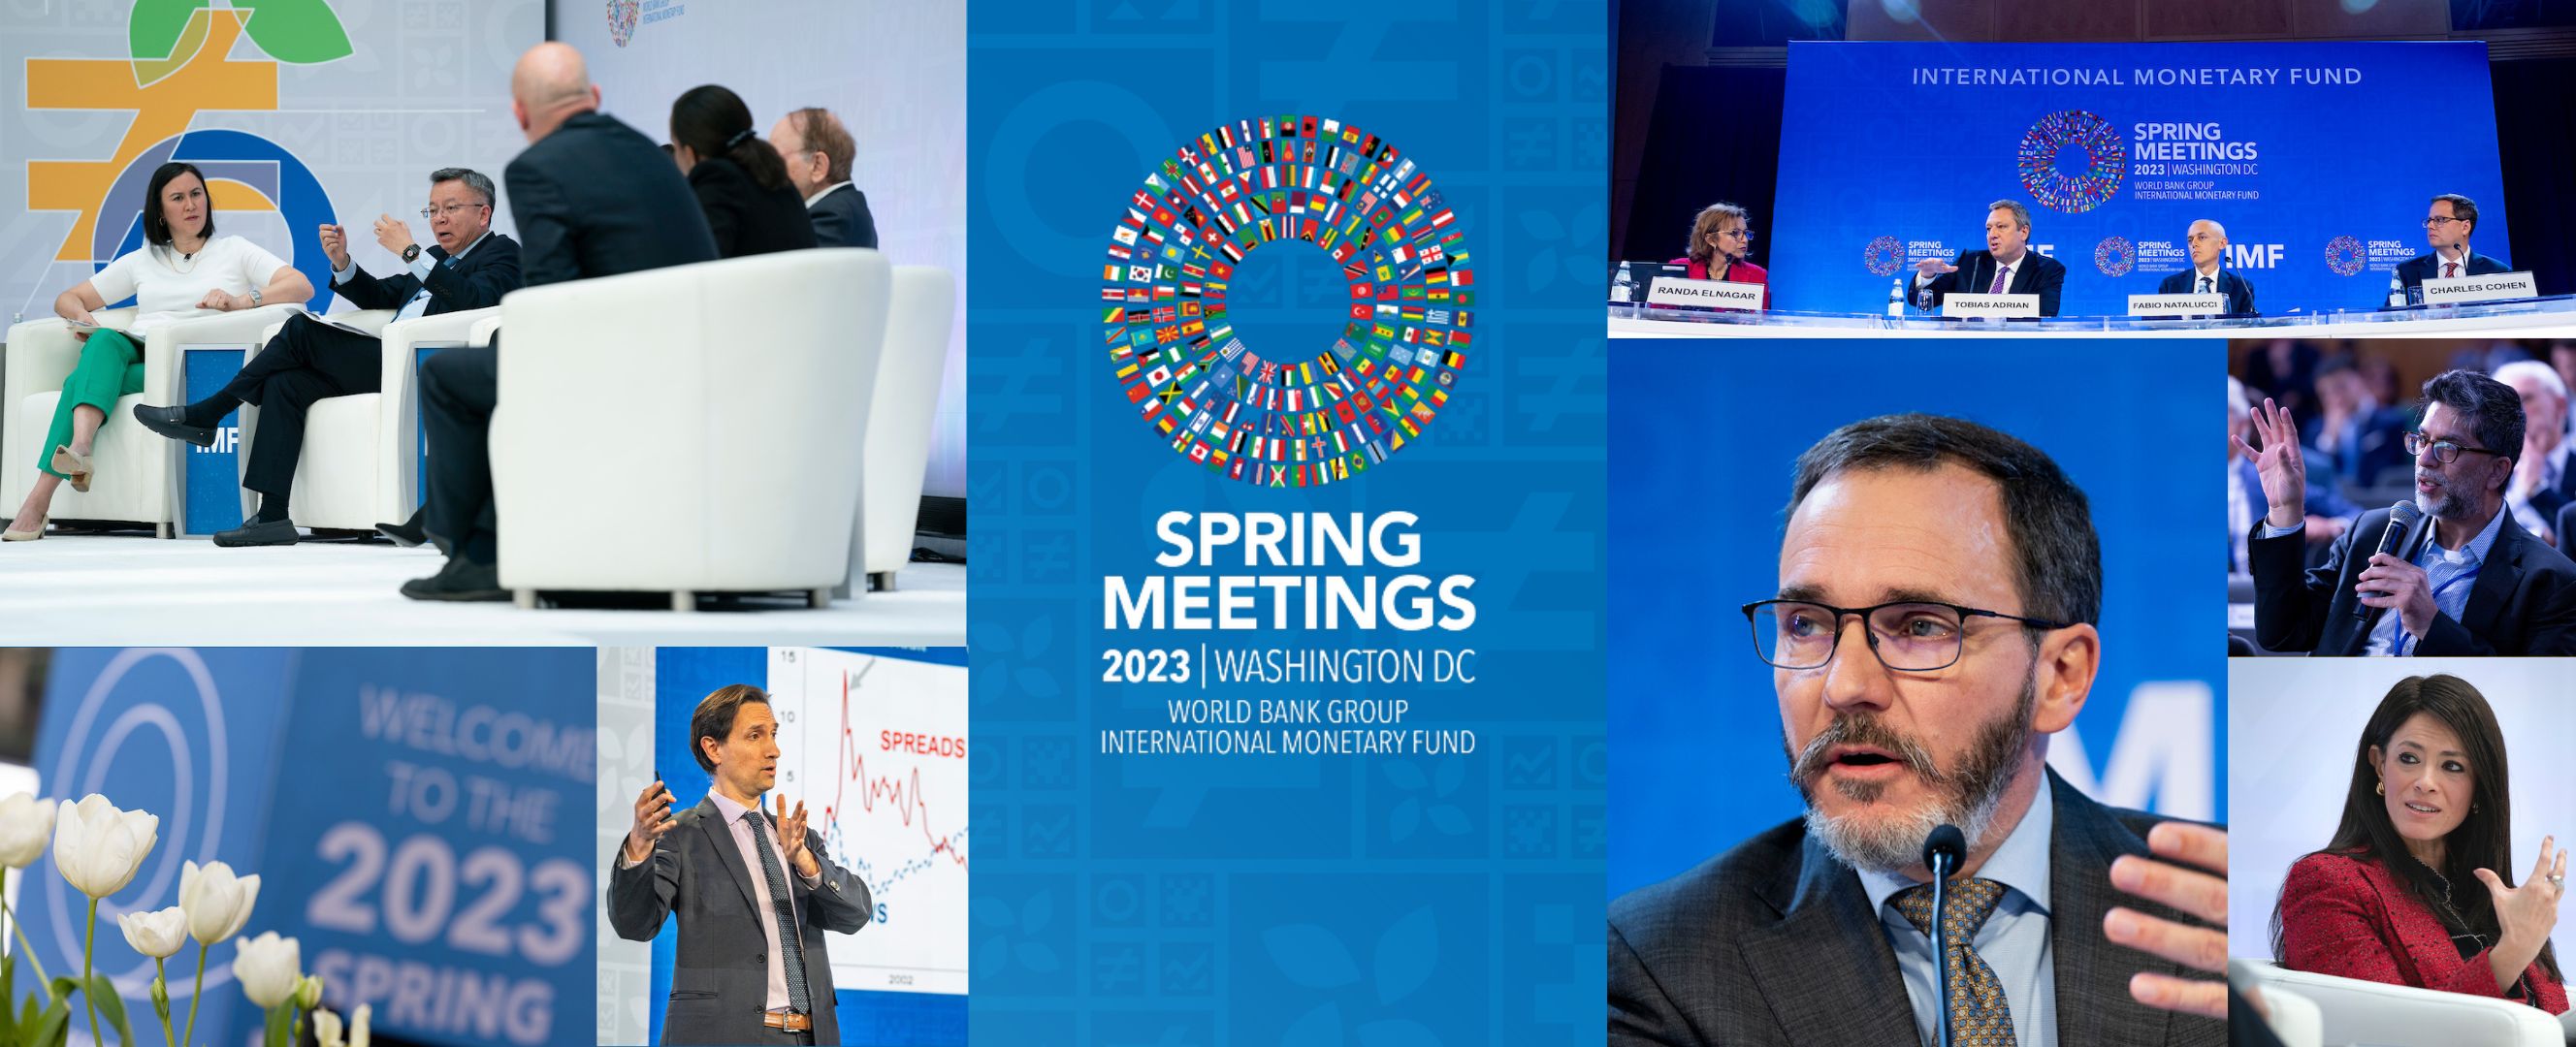 IMF Spring Meetings 2023 Updates